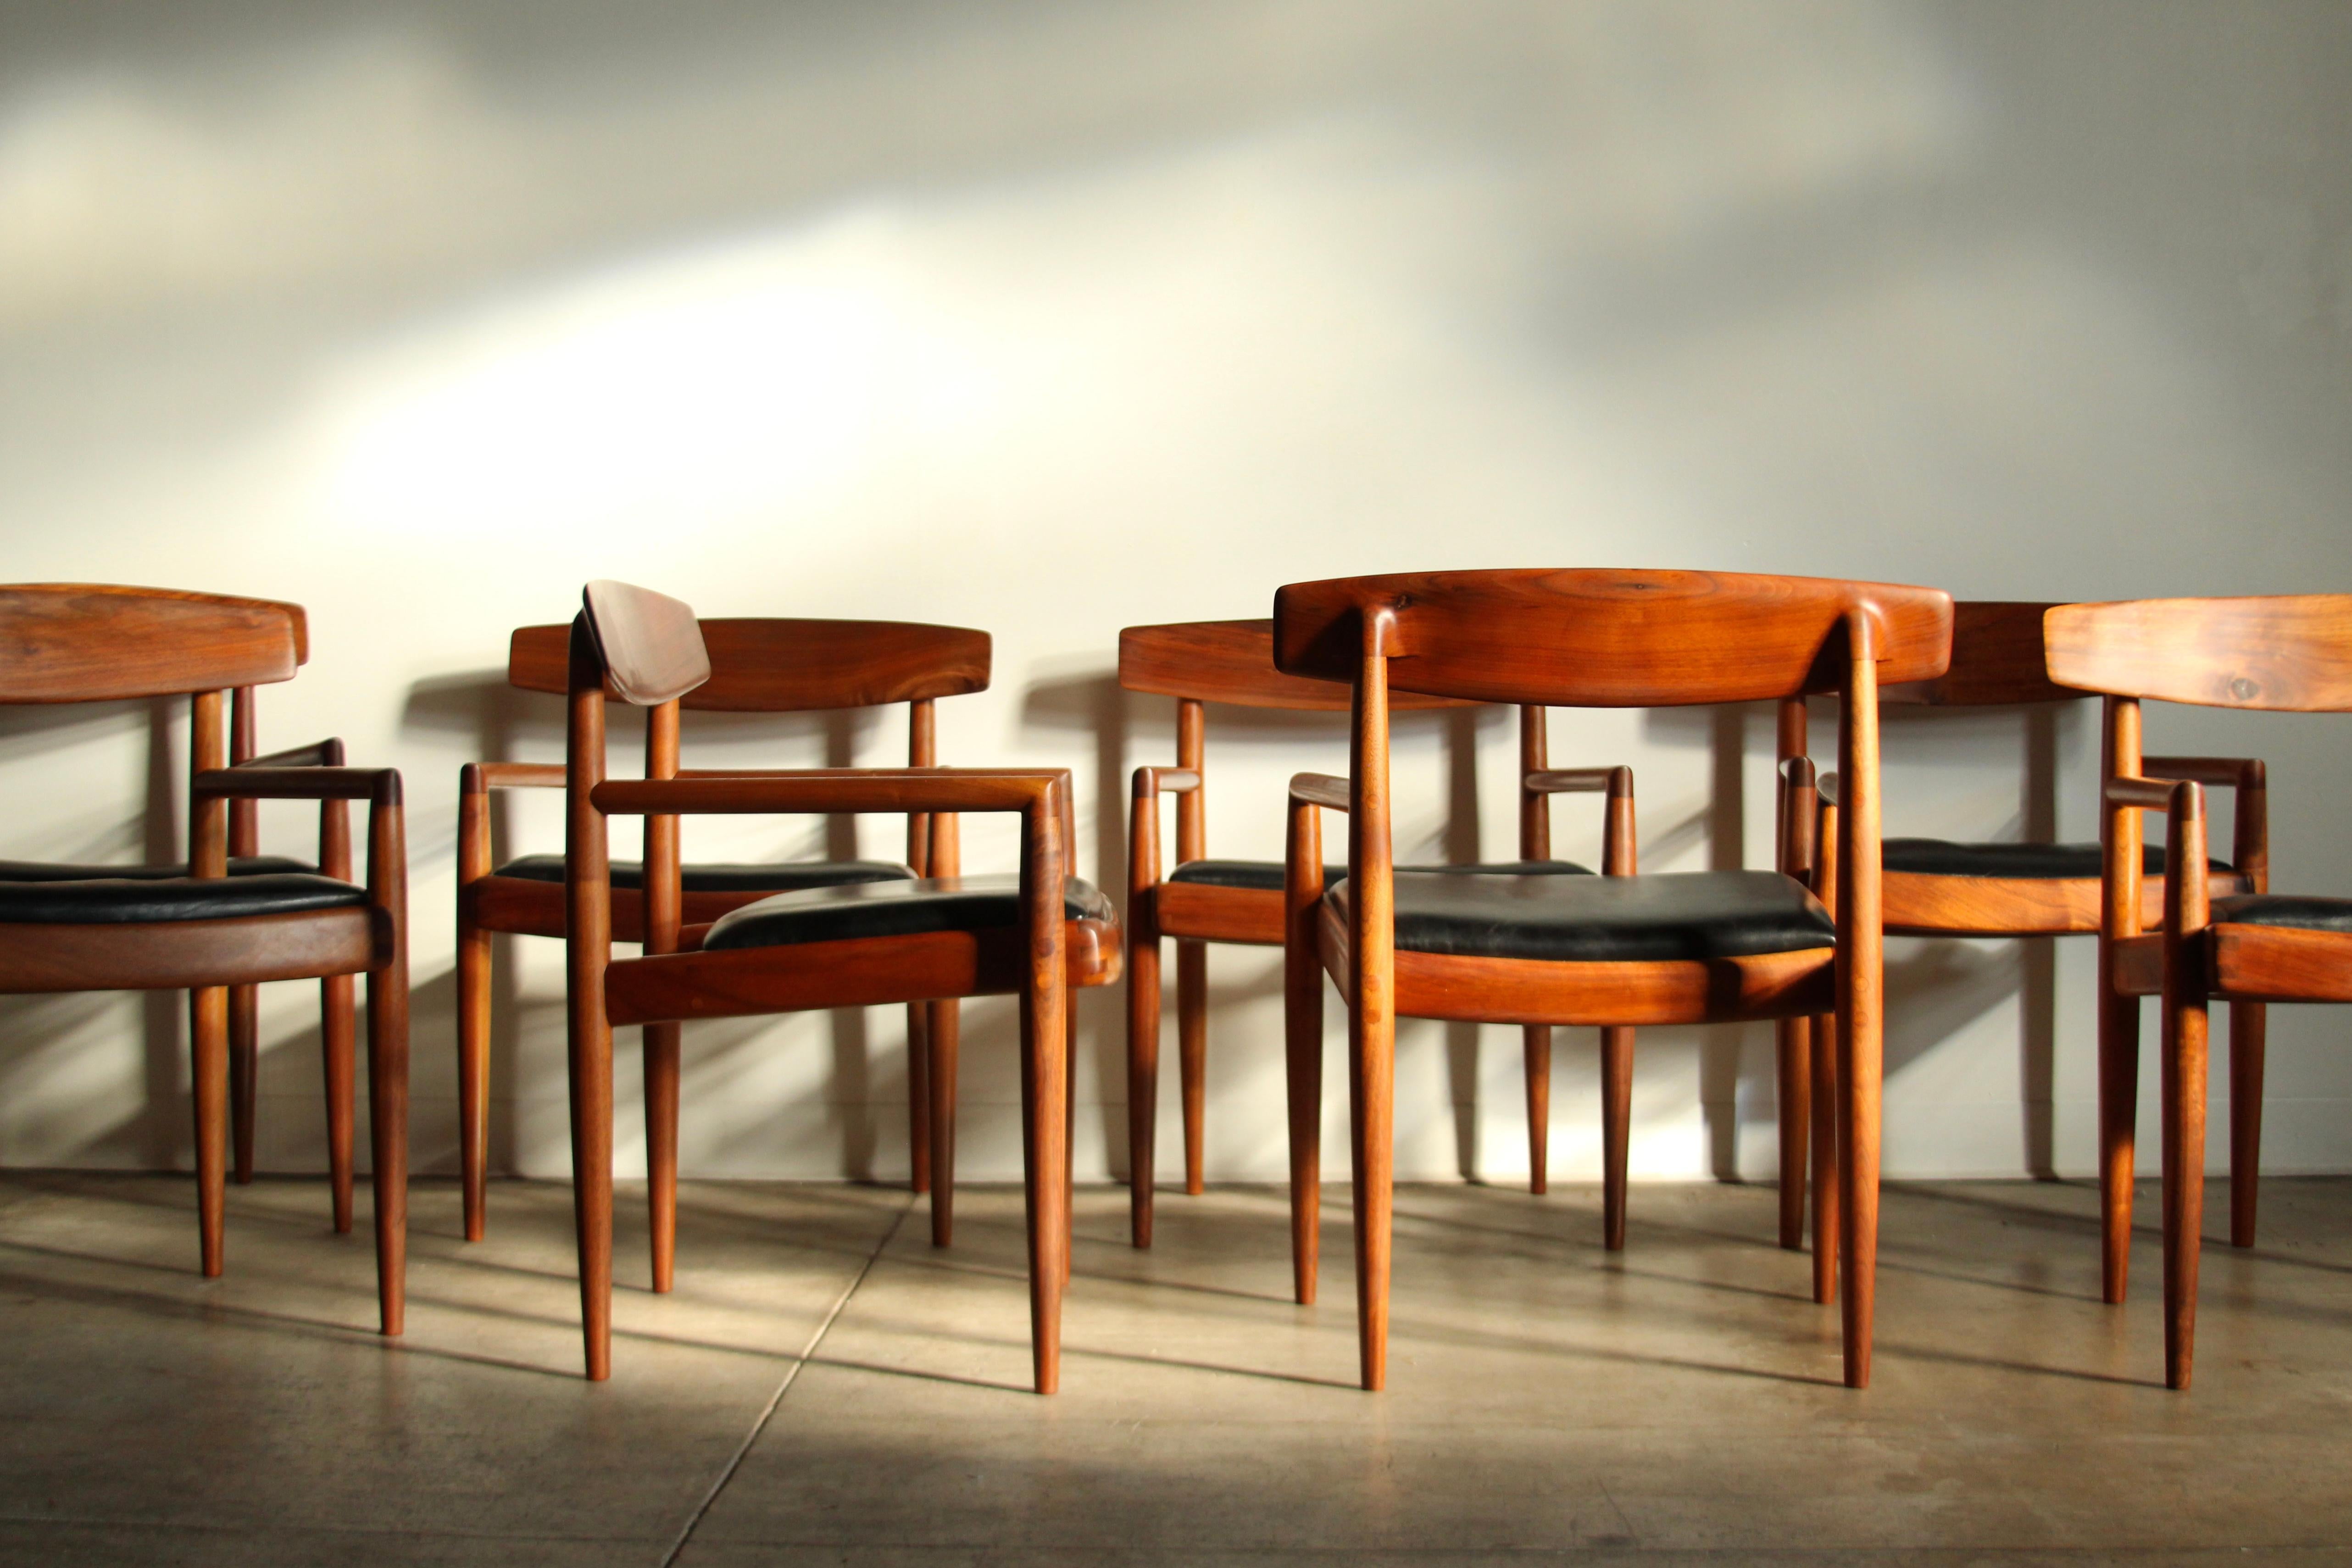 Ein großer und exquisiter Satz von acht Esszimmerstühlen des kalifornischen Meisters Sam Maloof, ausgeführt in atemberaubendem, stark gemasertem Claronussbaum. Sechs der Stühle wurden in den 1960er Jahren gebaut und zwei Stühle wurden 1974 von den